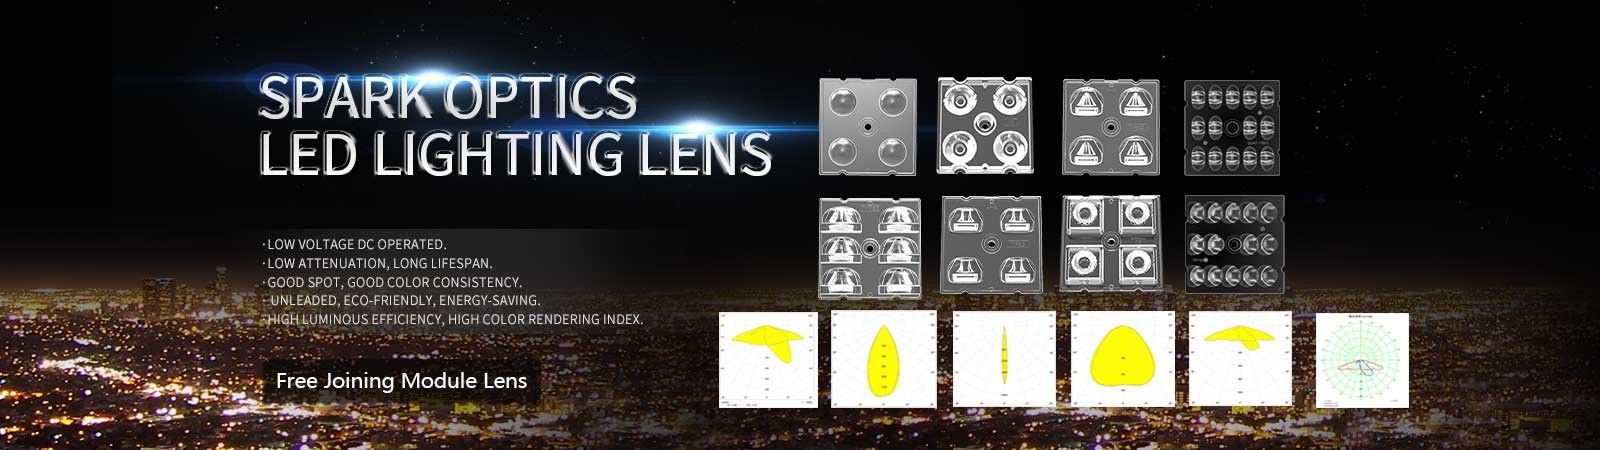 lentes conduzidas do sistema ótico